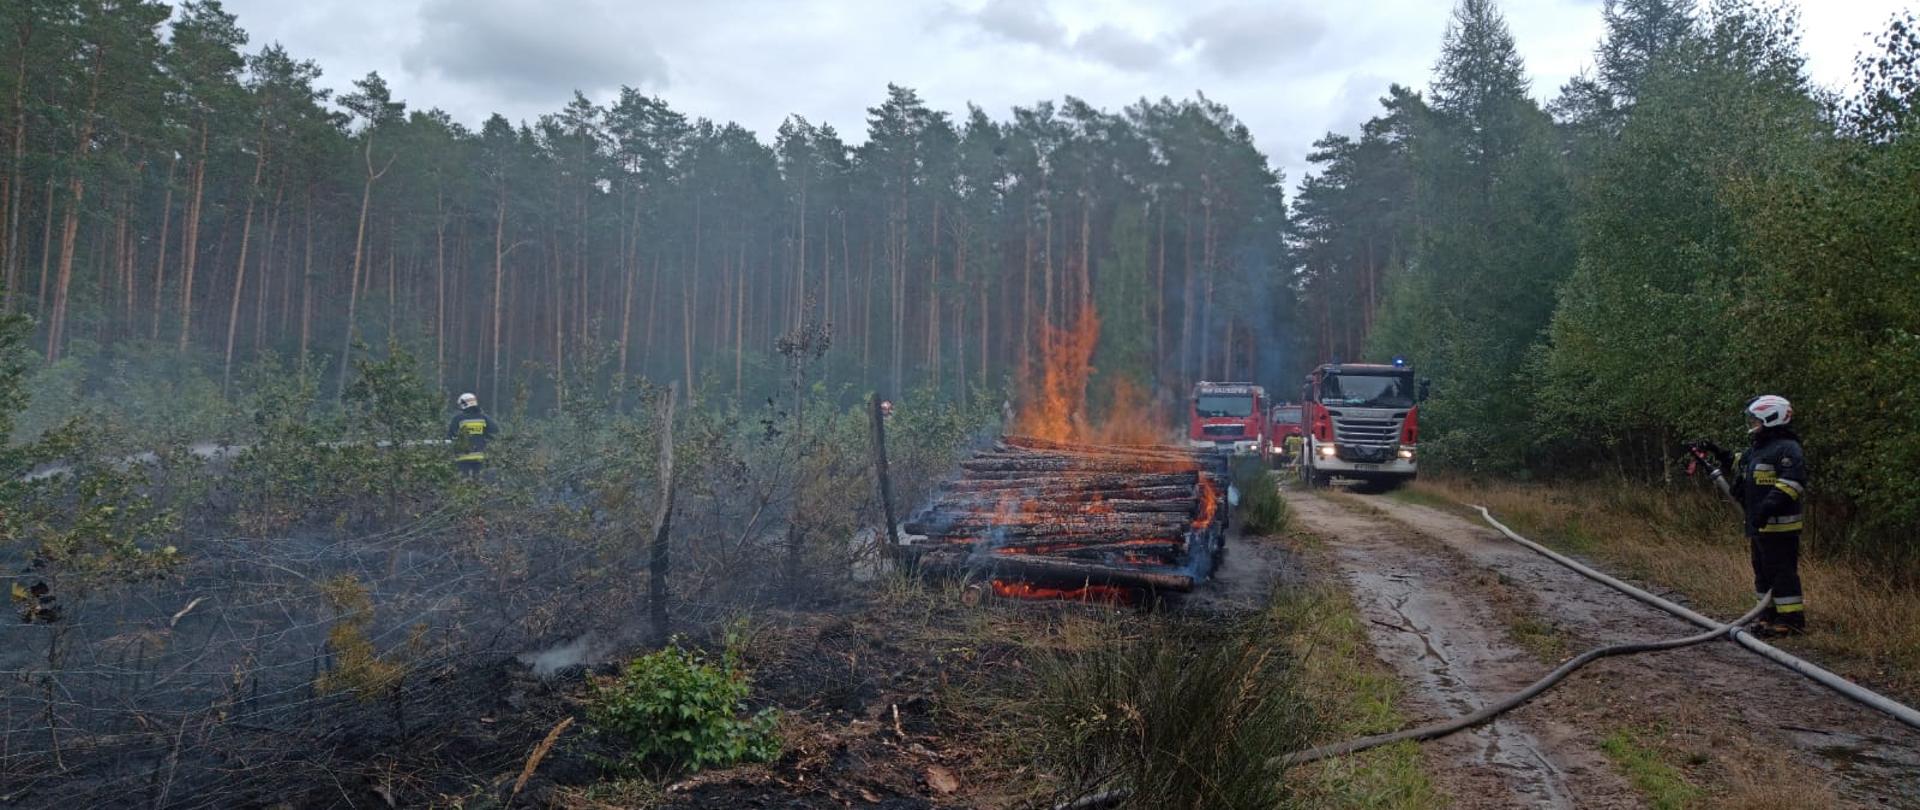 Na zdjęciu widać druhów OSP podczas akcji gaśniczej, palącą się pryzmę drewna oraz wozy strażackie.